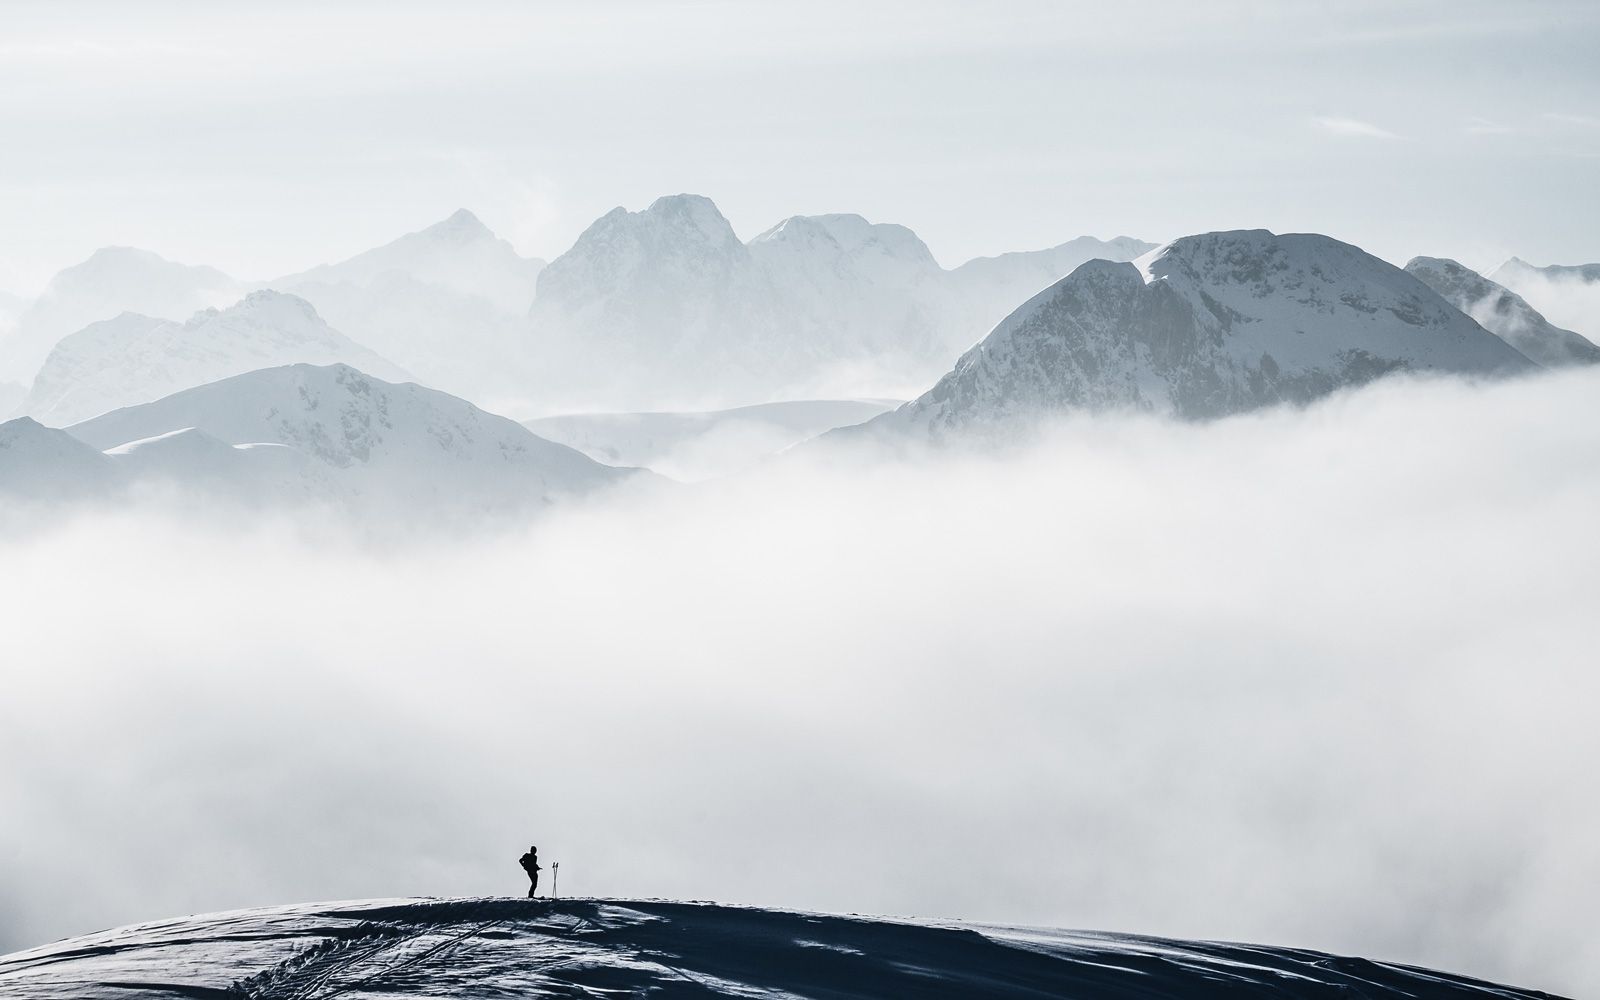  Berge Winter Hintergrundbild 1600x1000. Fotowettbewerb: Winterwandern Blog für Beratung, Know How & Inspiration